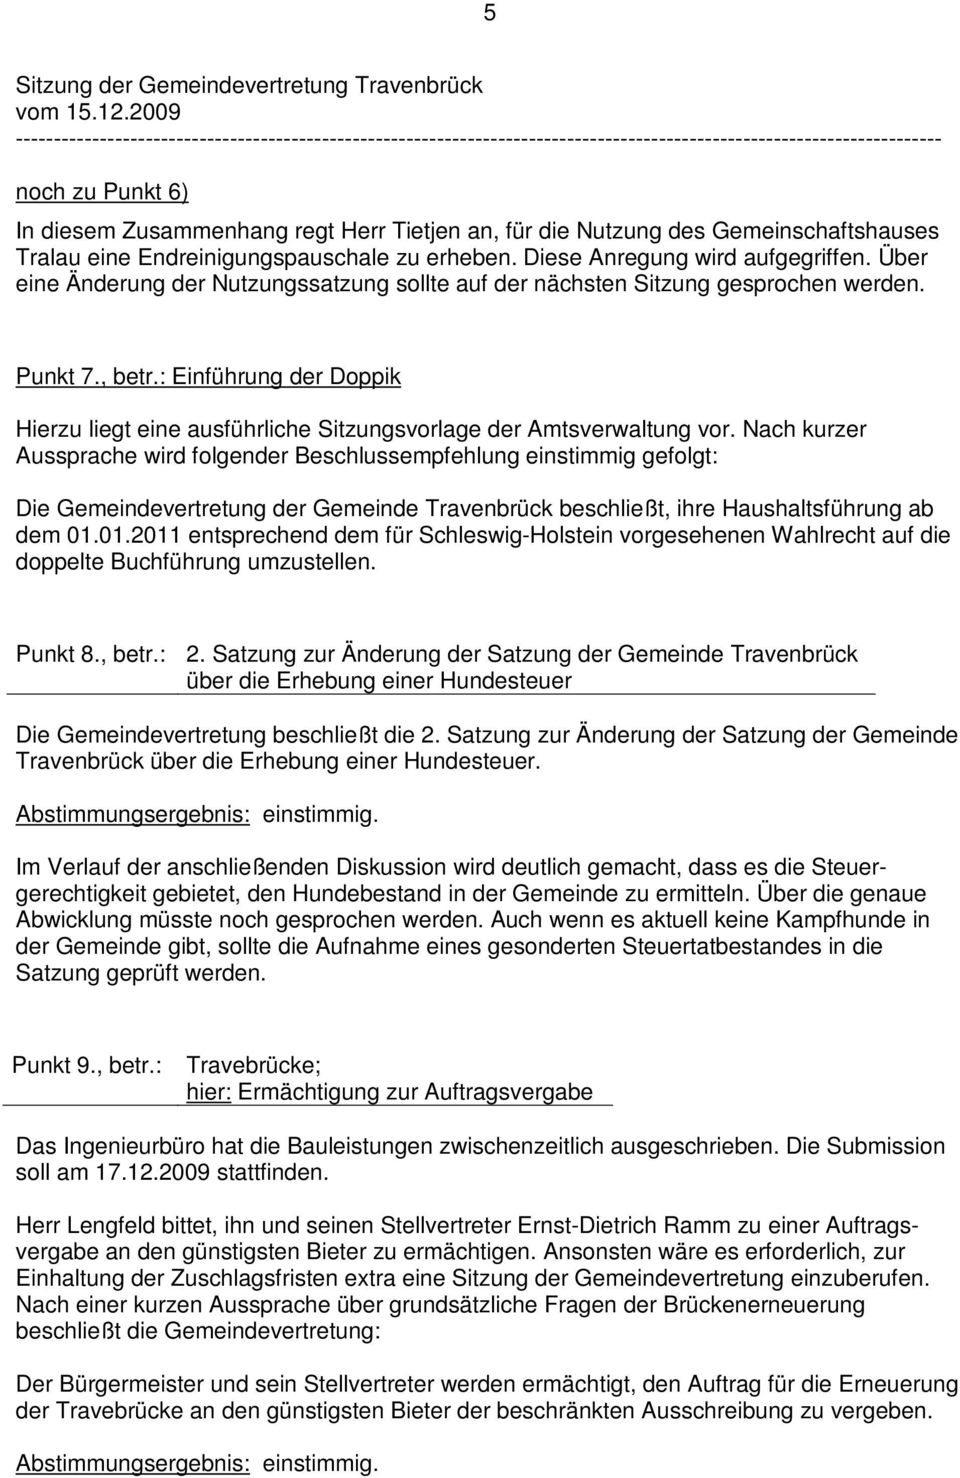 Nach kurzer Aussprache wird folgender Beschlussempfehlung einstimmig gefolgt: Die Gemeindevertretung der Gemeinde Travenbrück beschließt, ihre Haushaltsführung ab dem 01.